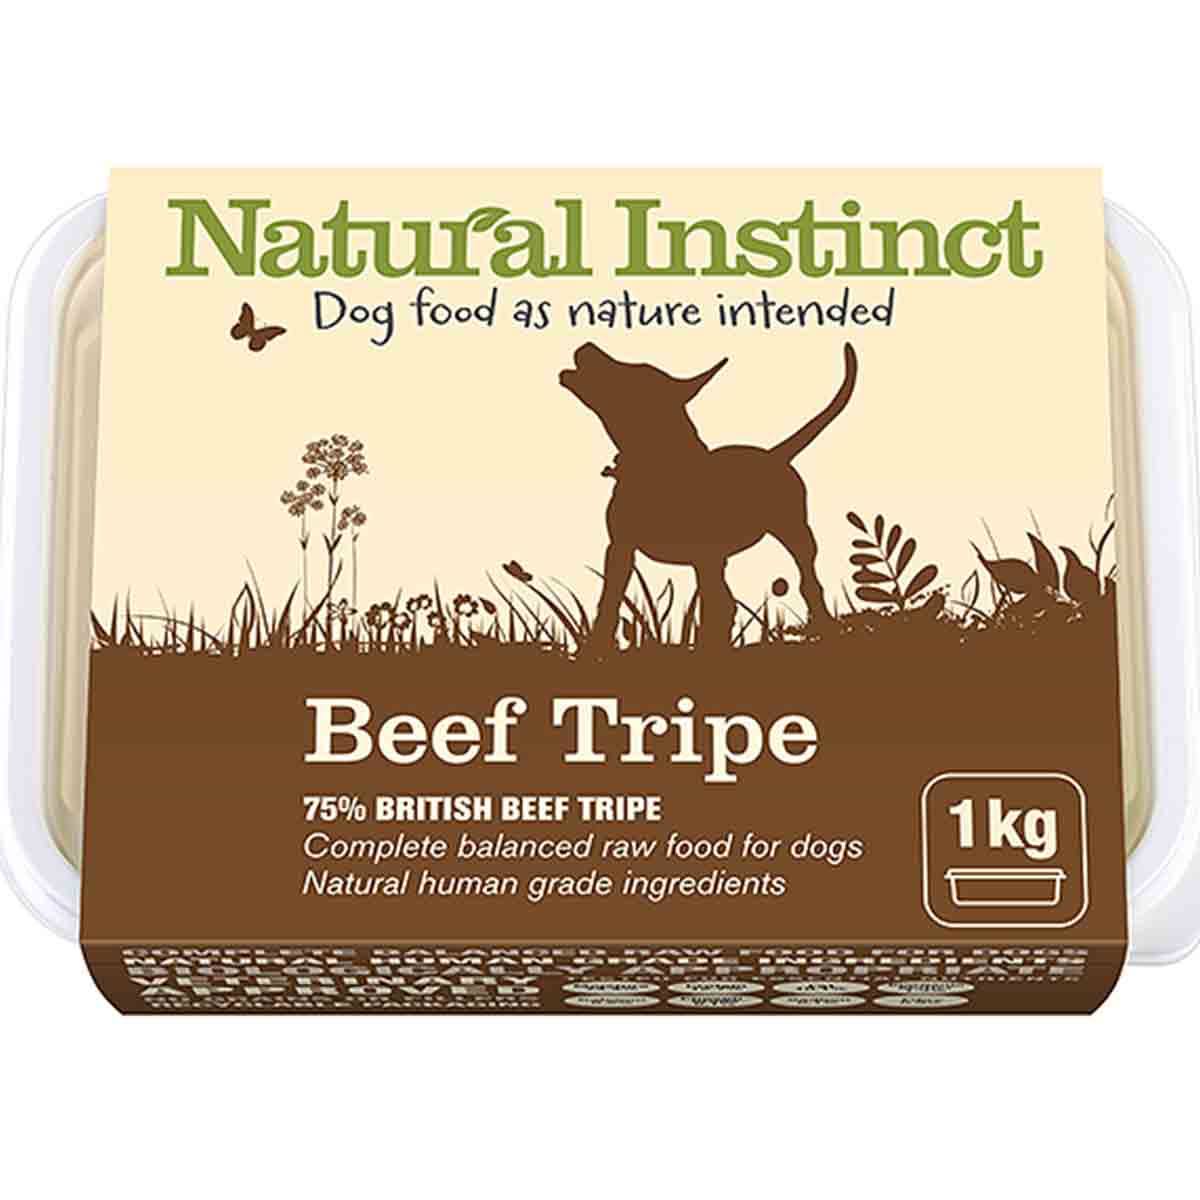 Natural Instinct Dog Natural Food - Beef Tripe, 1kg